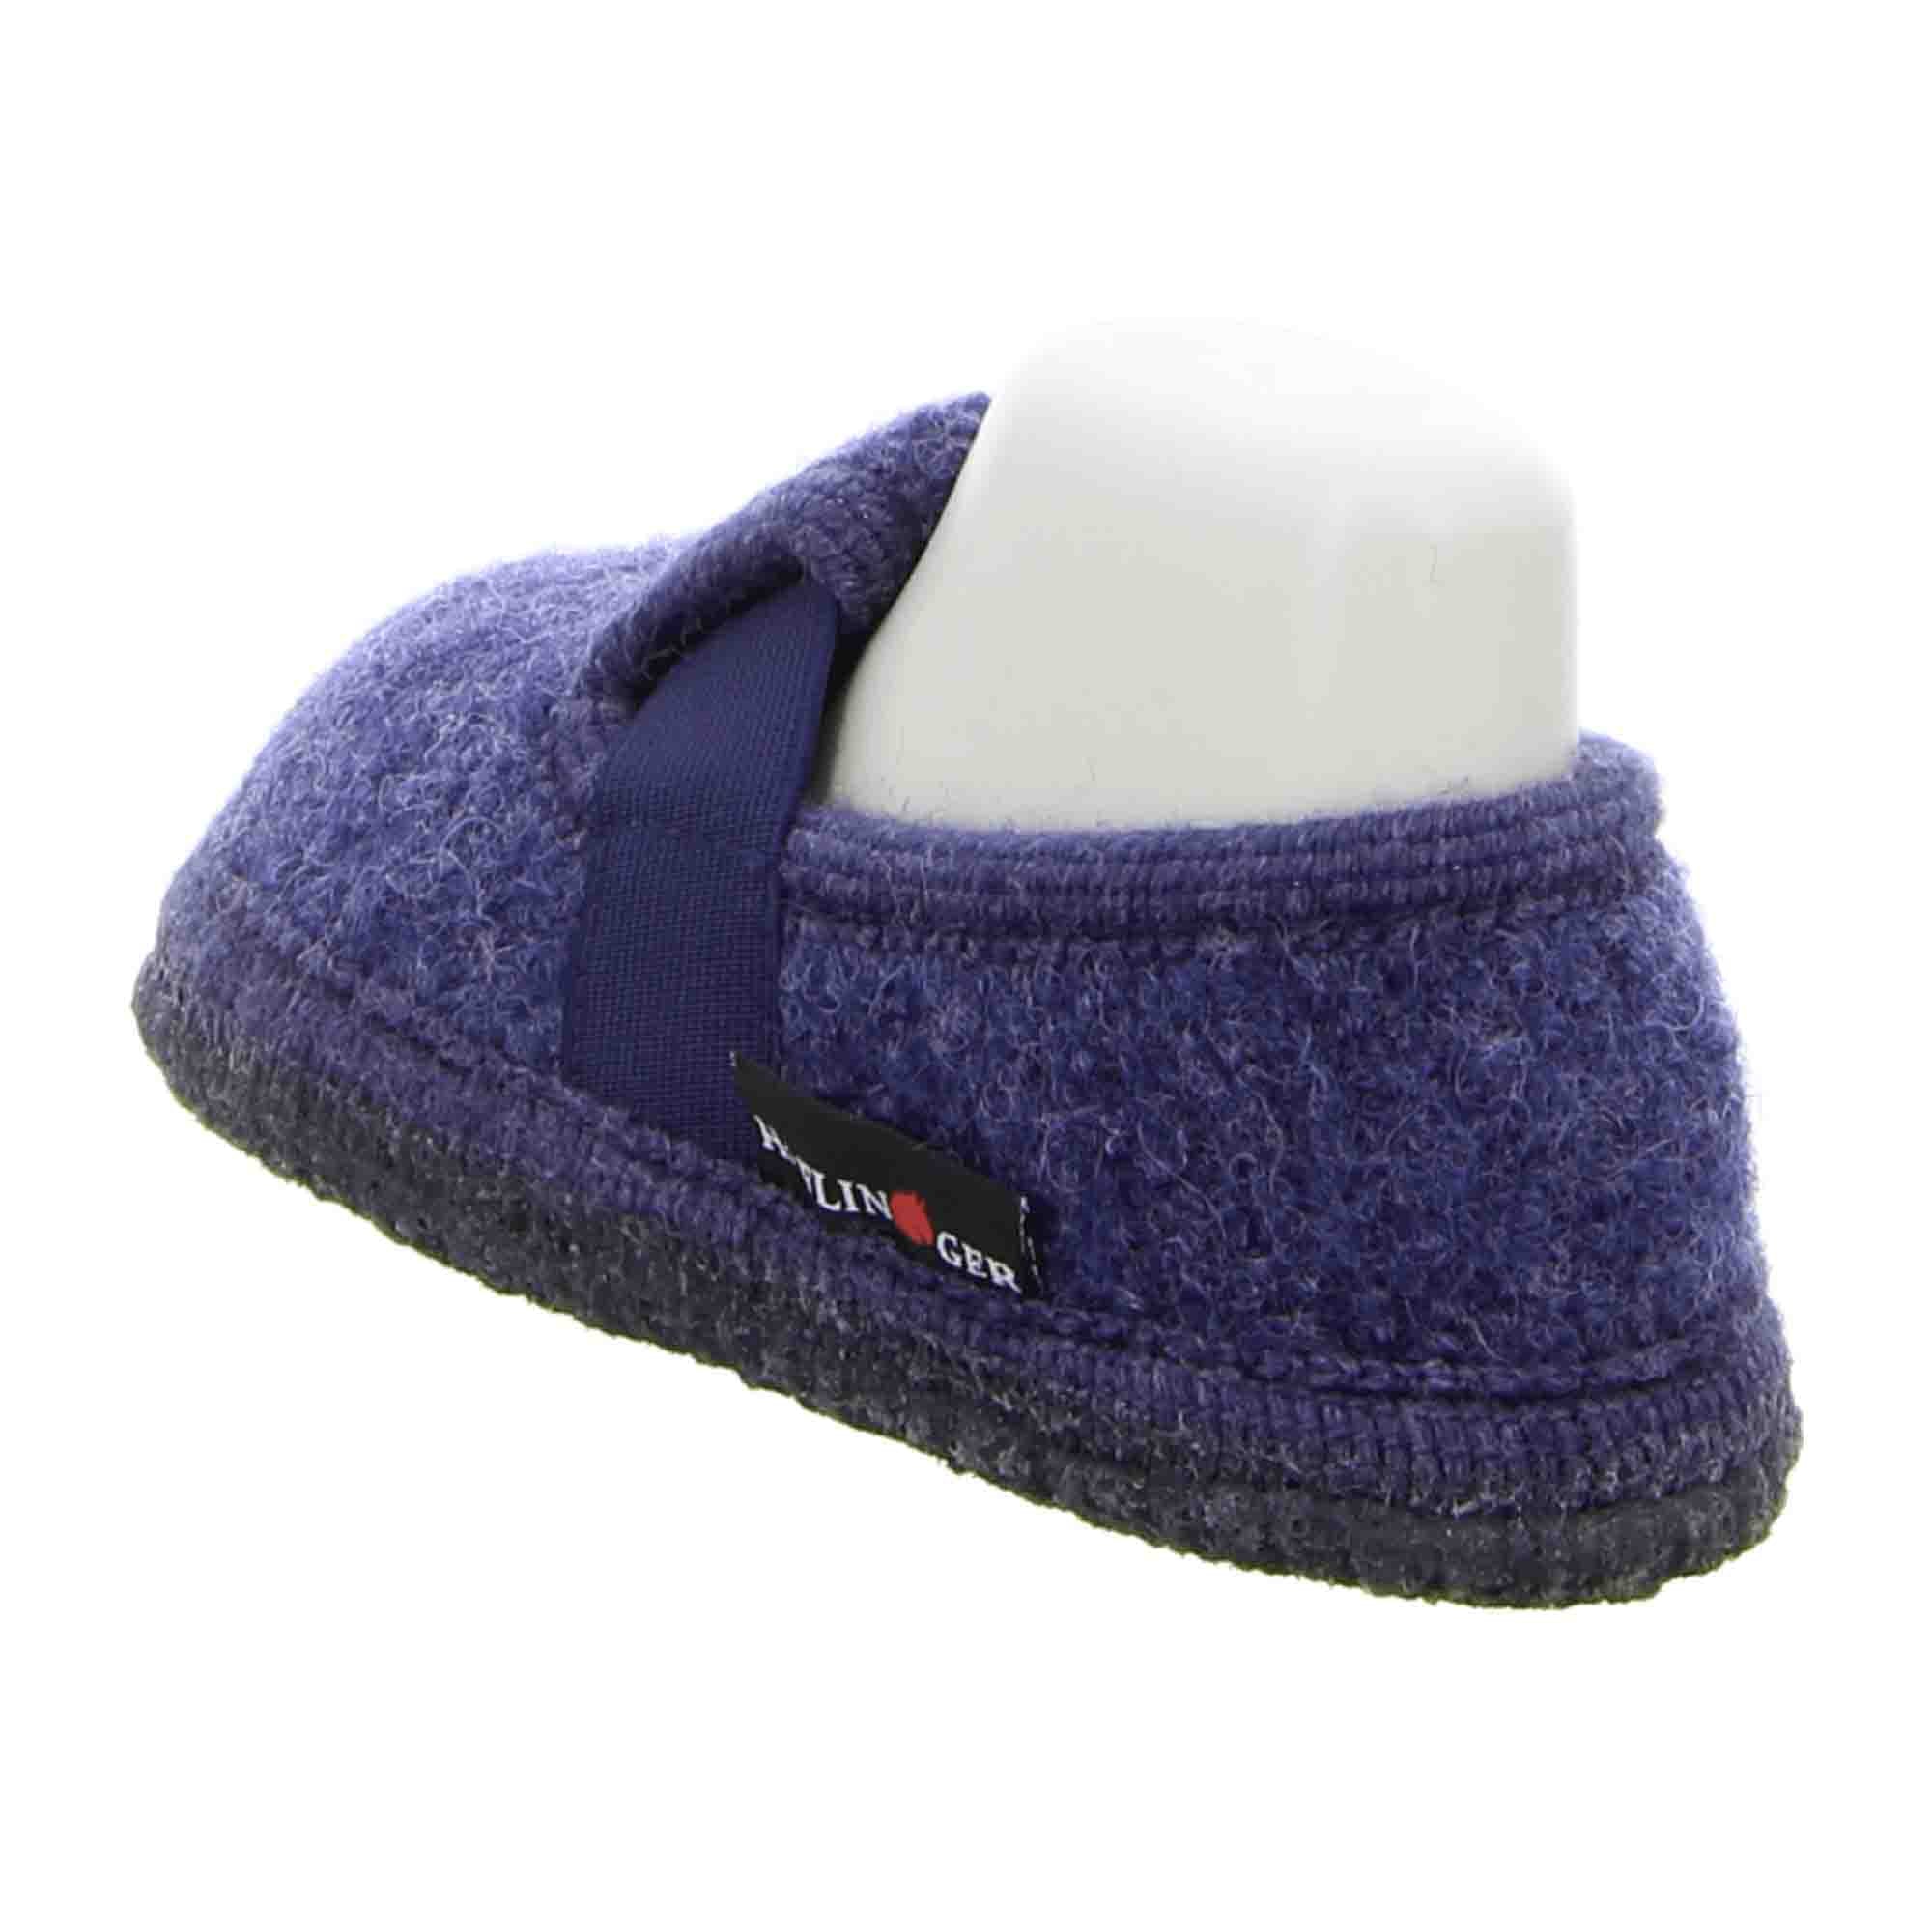 Haflinger Kids' Slipper Joschi - Comfortable Wool Slippers in Jeans Blue, Non-Slip Sole